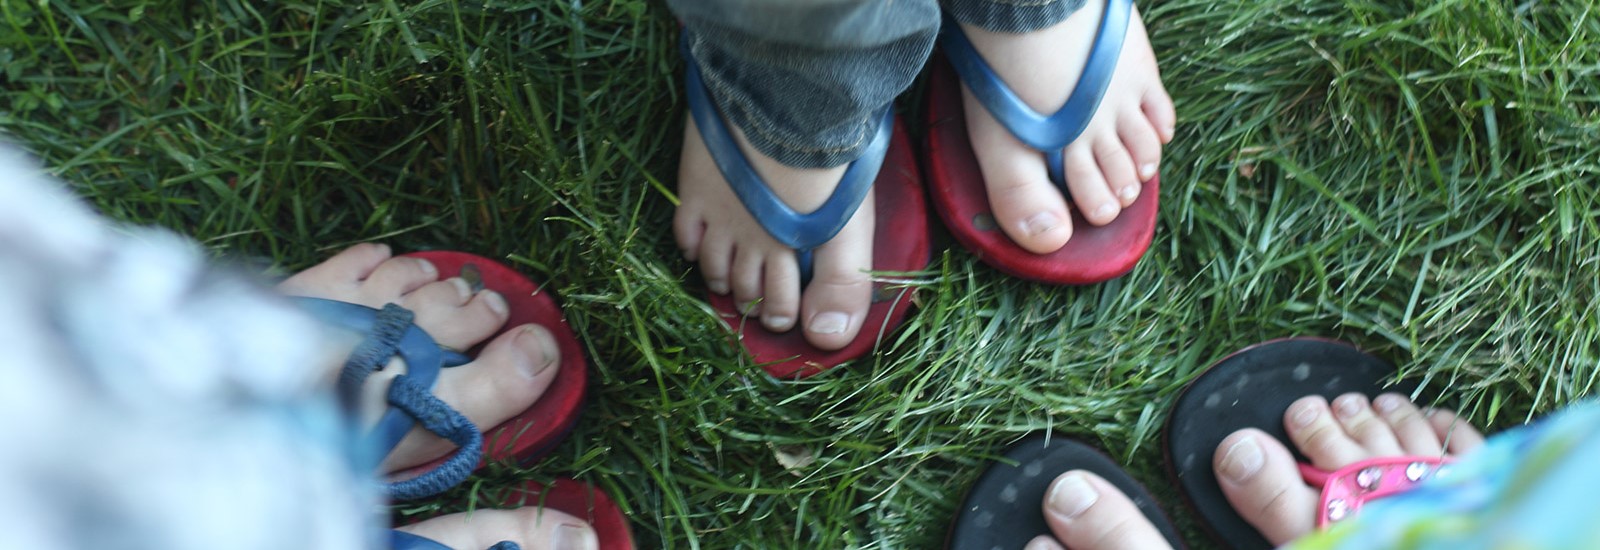 Photo of 3 pairs of kids feet.